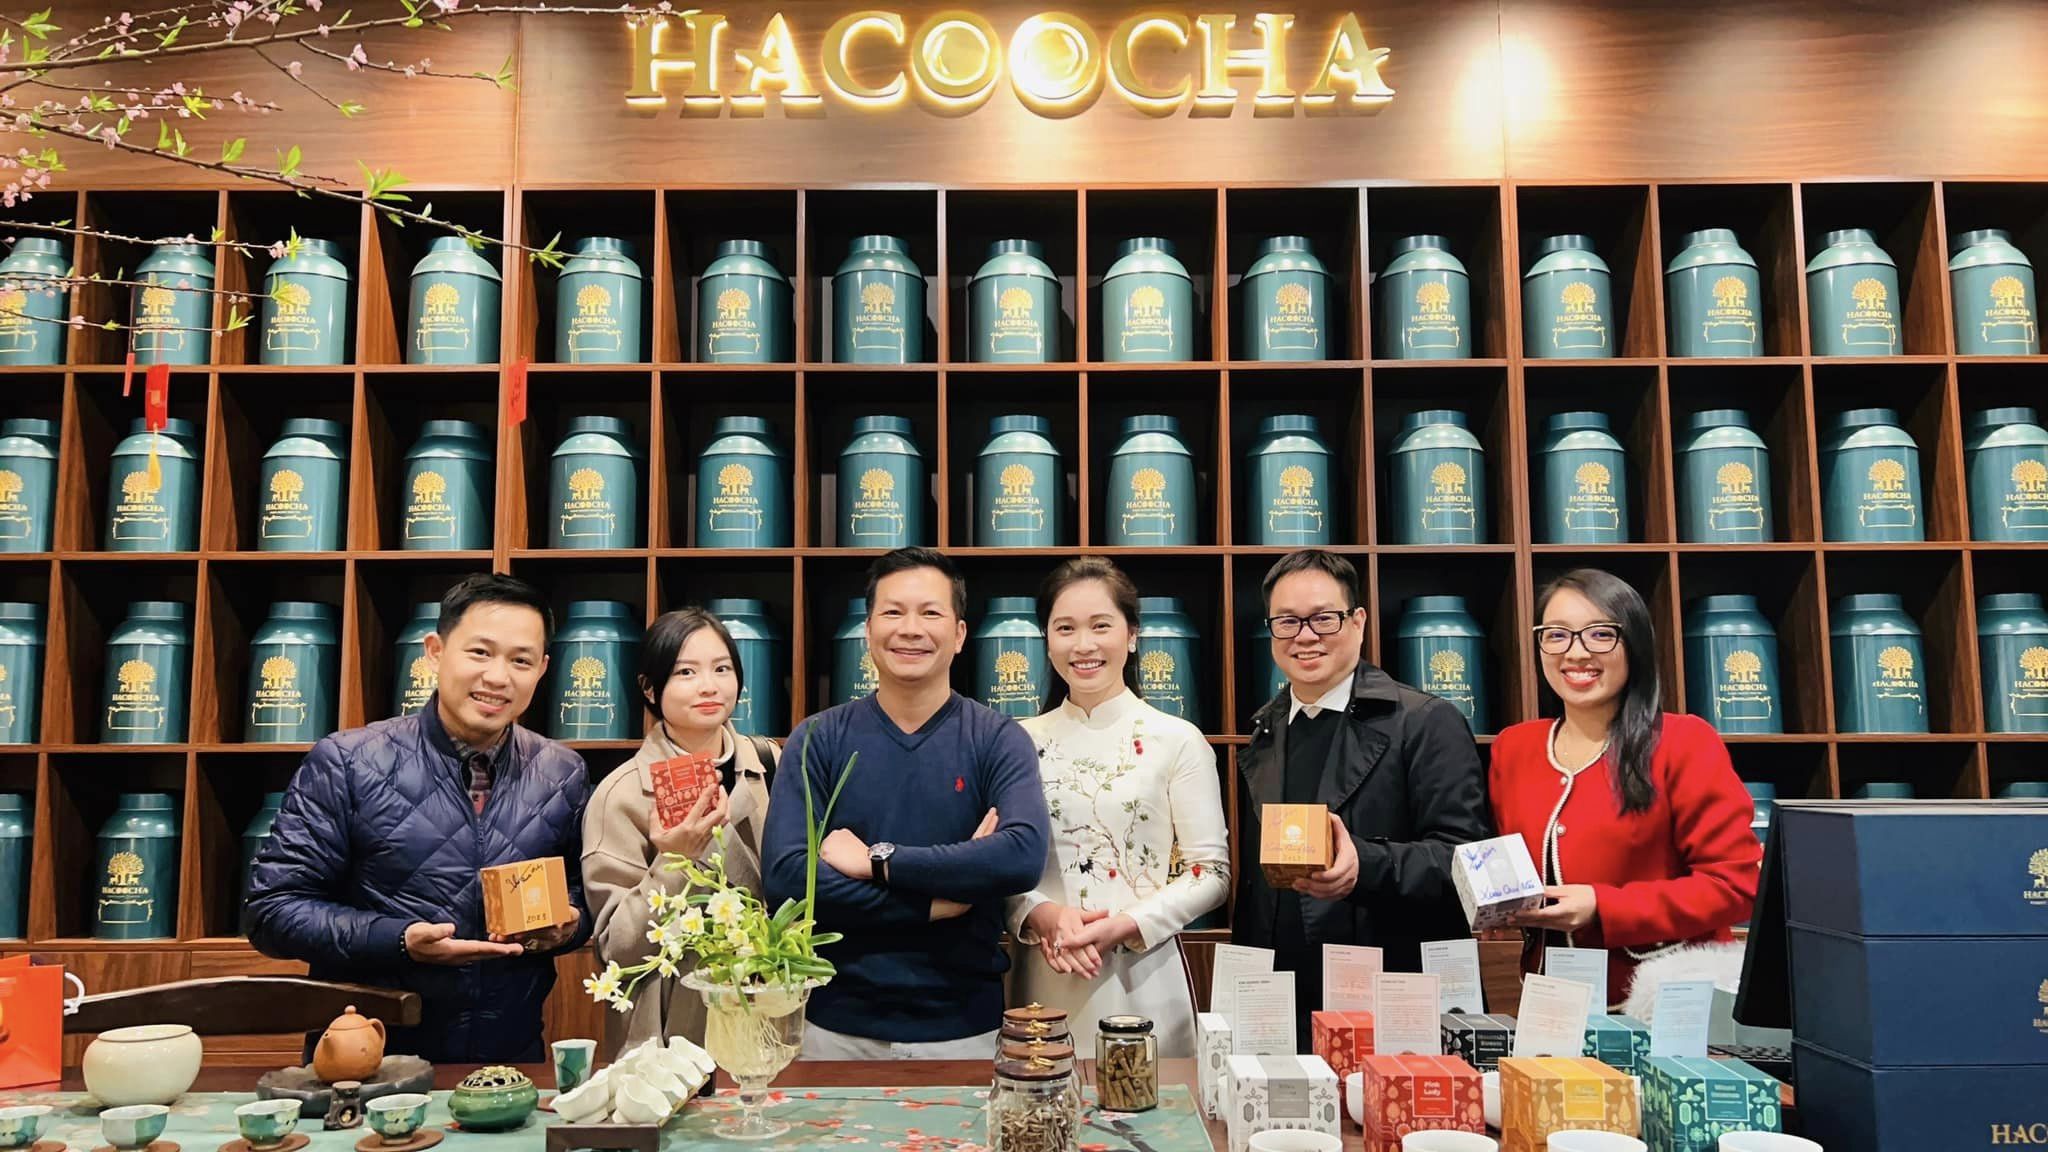 Hacoocha showroom